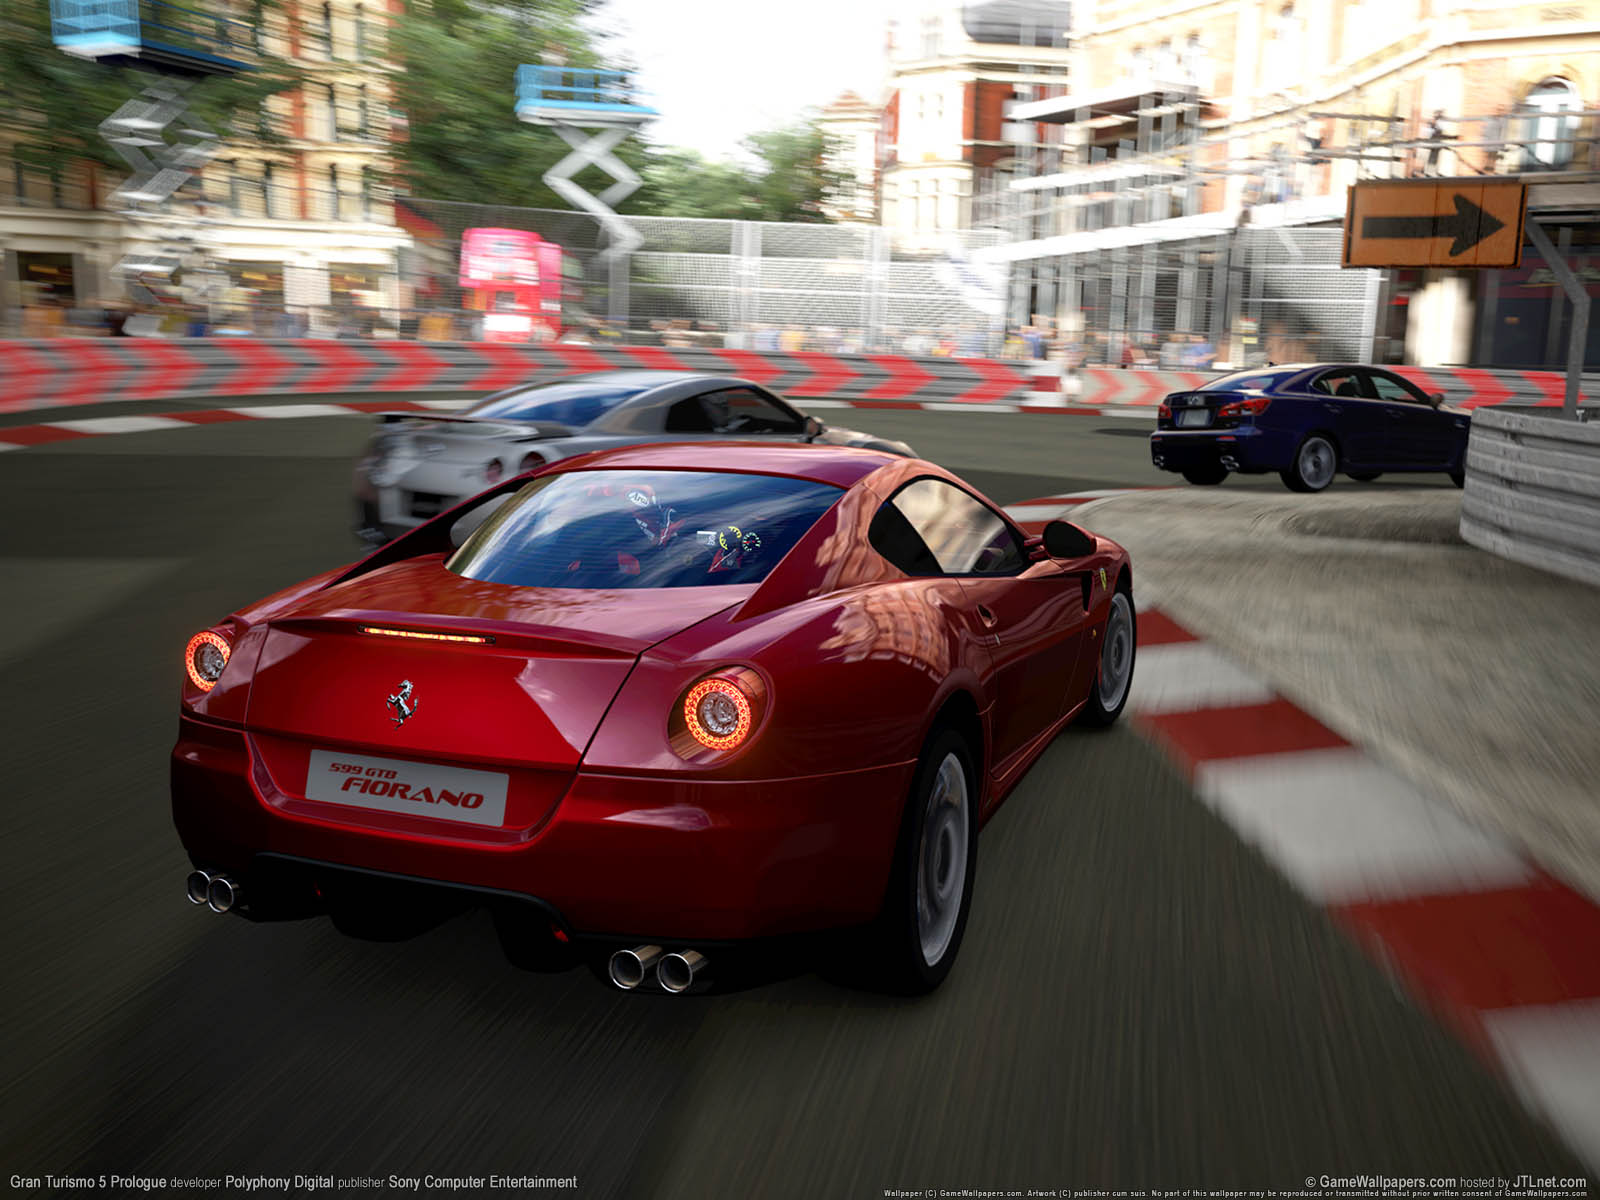 Gran Turismo 5 Prologue fond d'cran 02 1600x1200